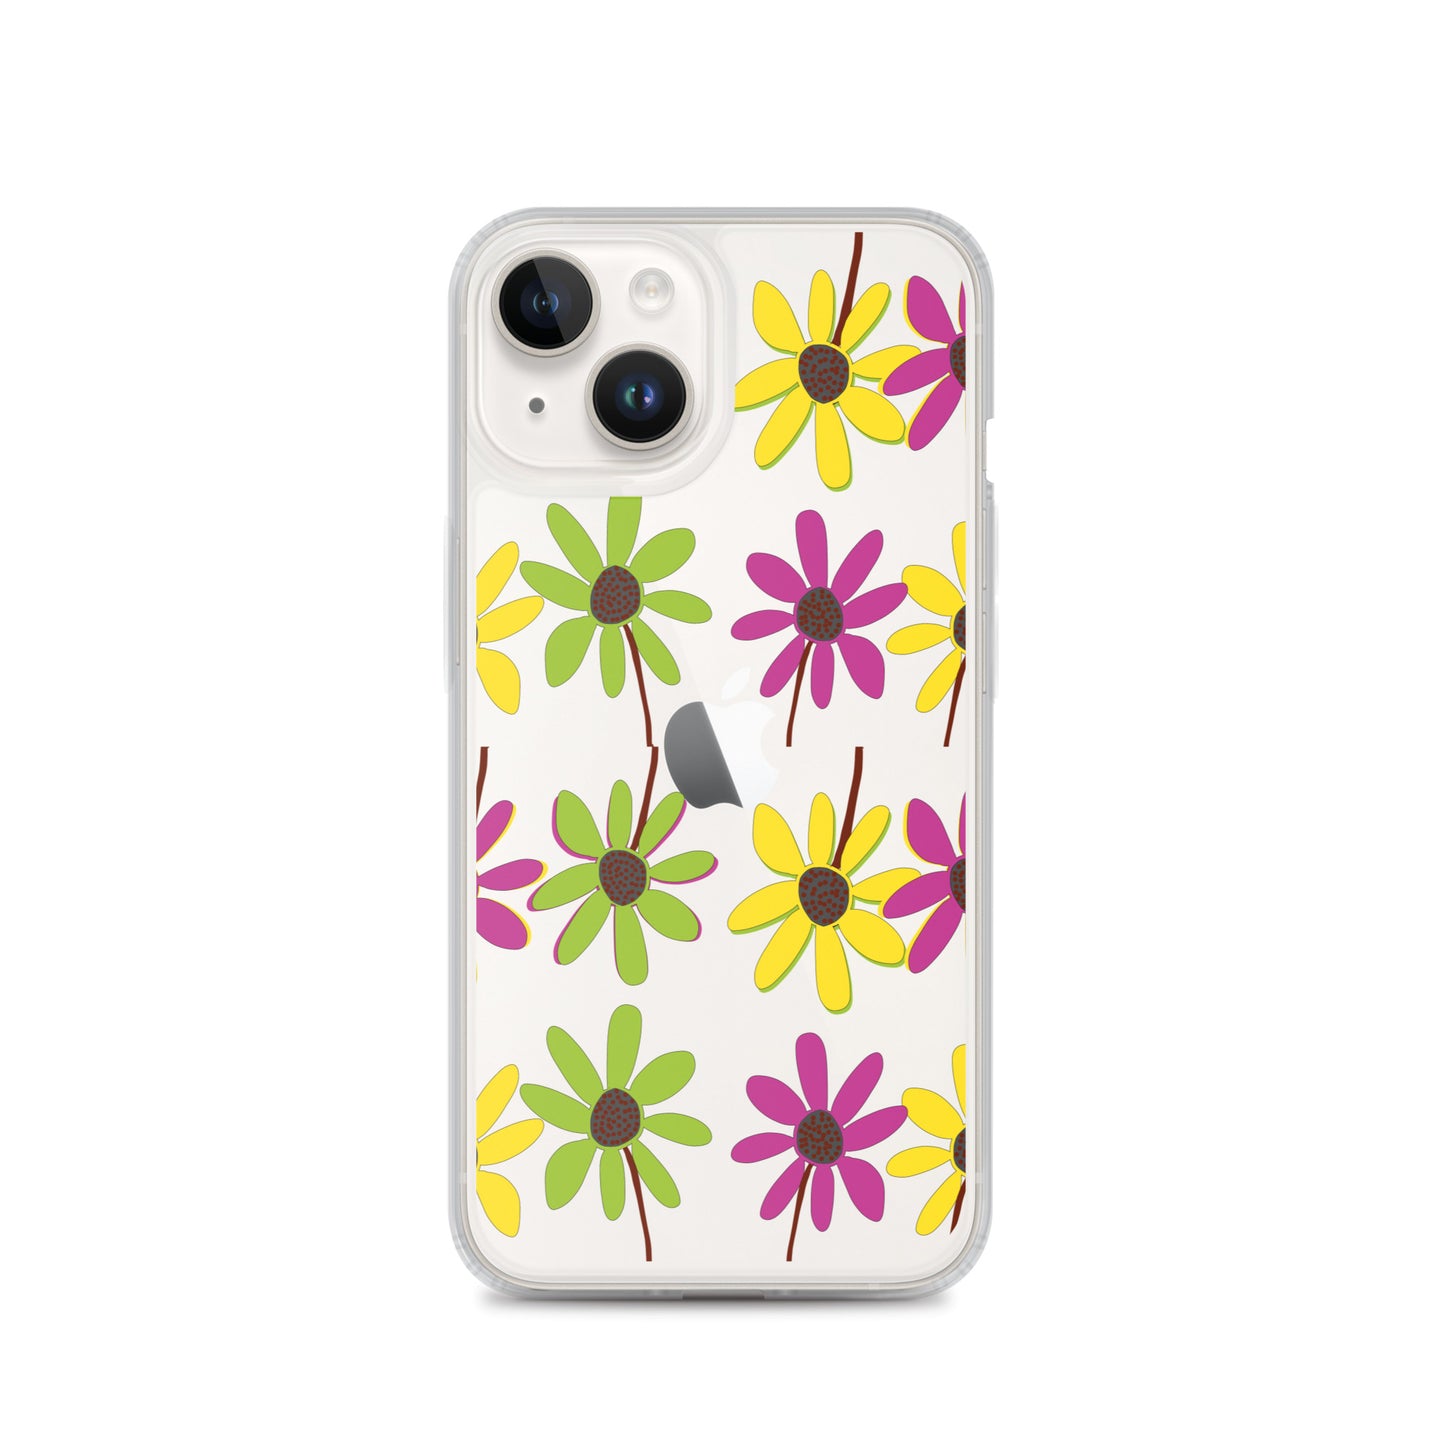 Coque transparente pour iPhone avec pétales de fleurs colorées dessinées à la main